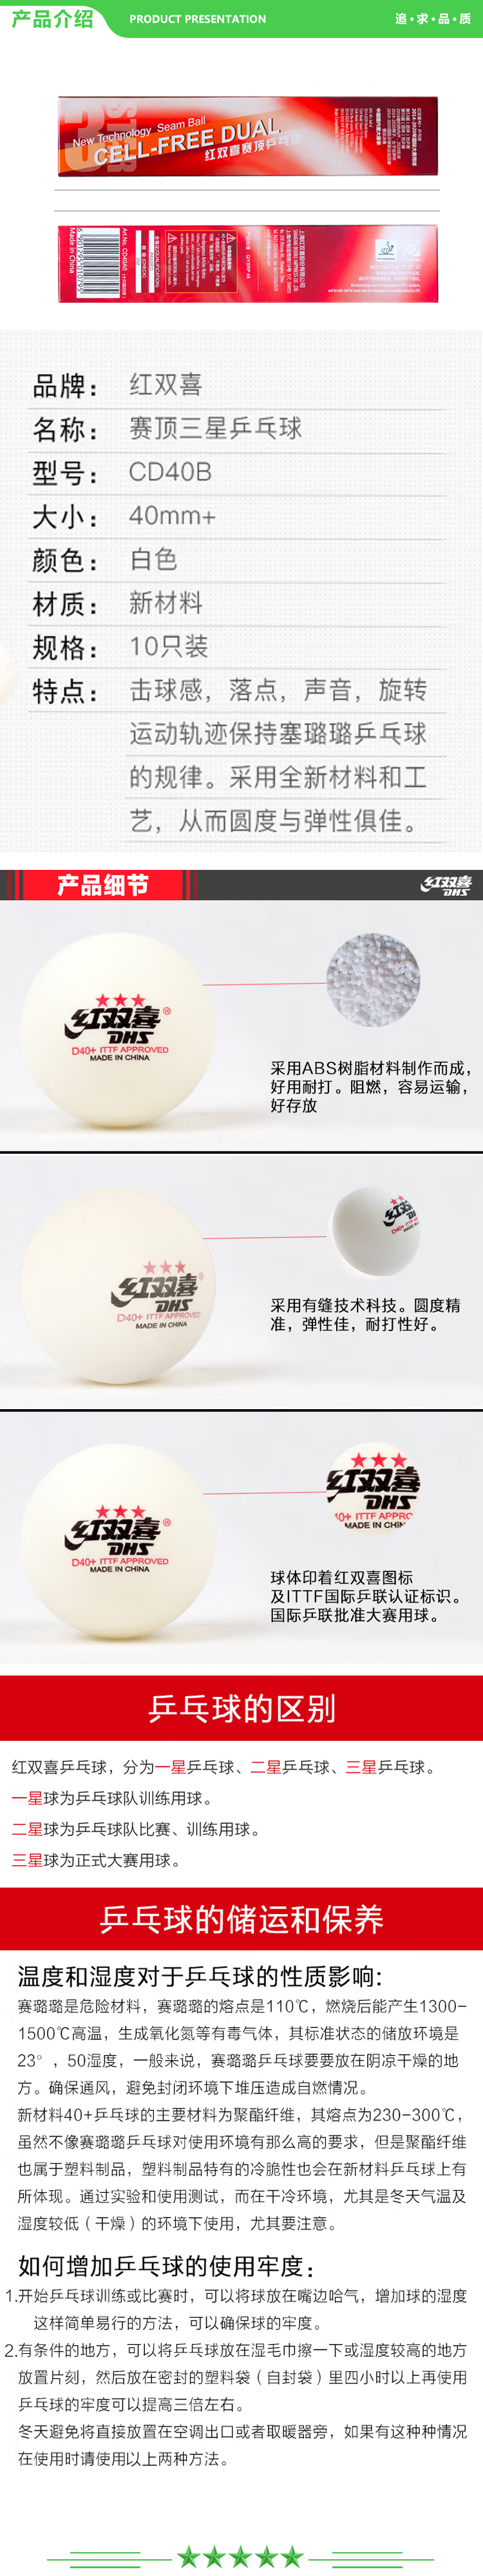 红双喜 DHS 乒乓球 赛顶三星白 比赛球ABS新材料40+白色（10只装）  2.jpg